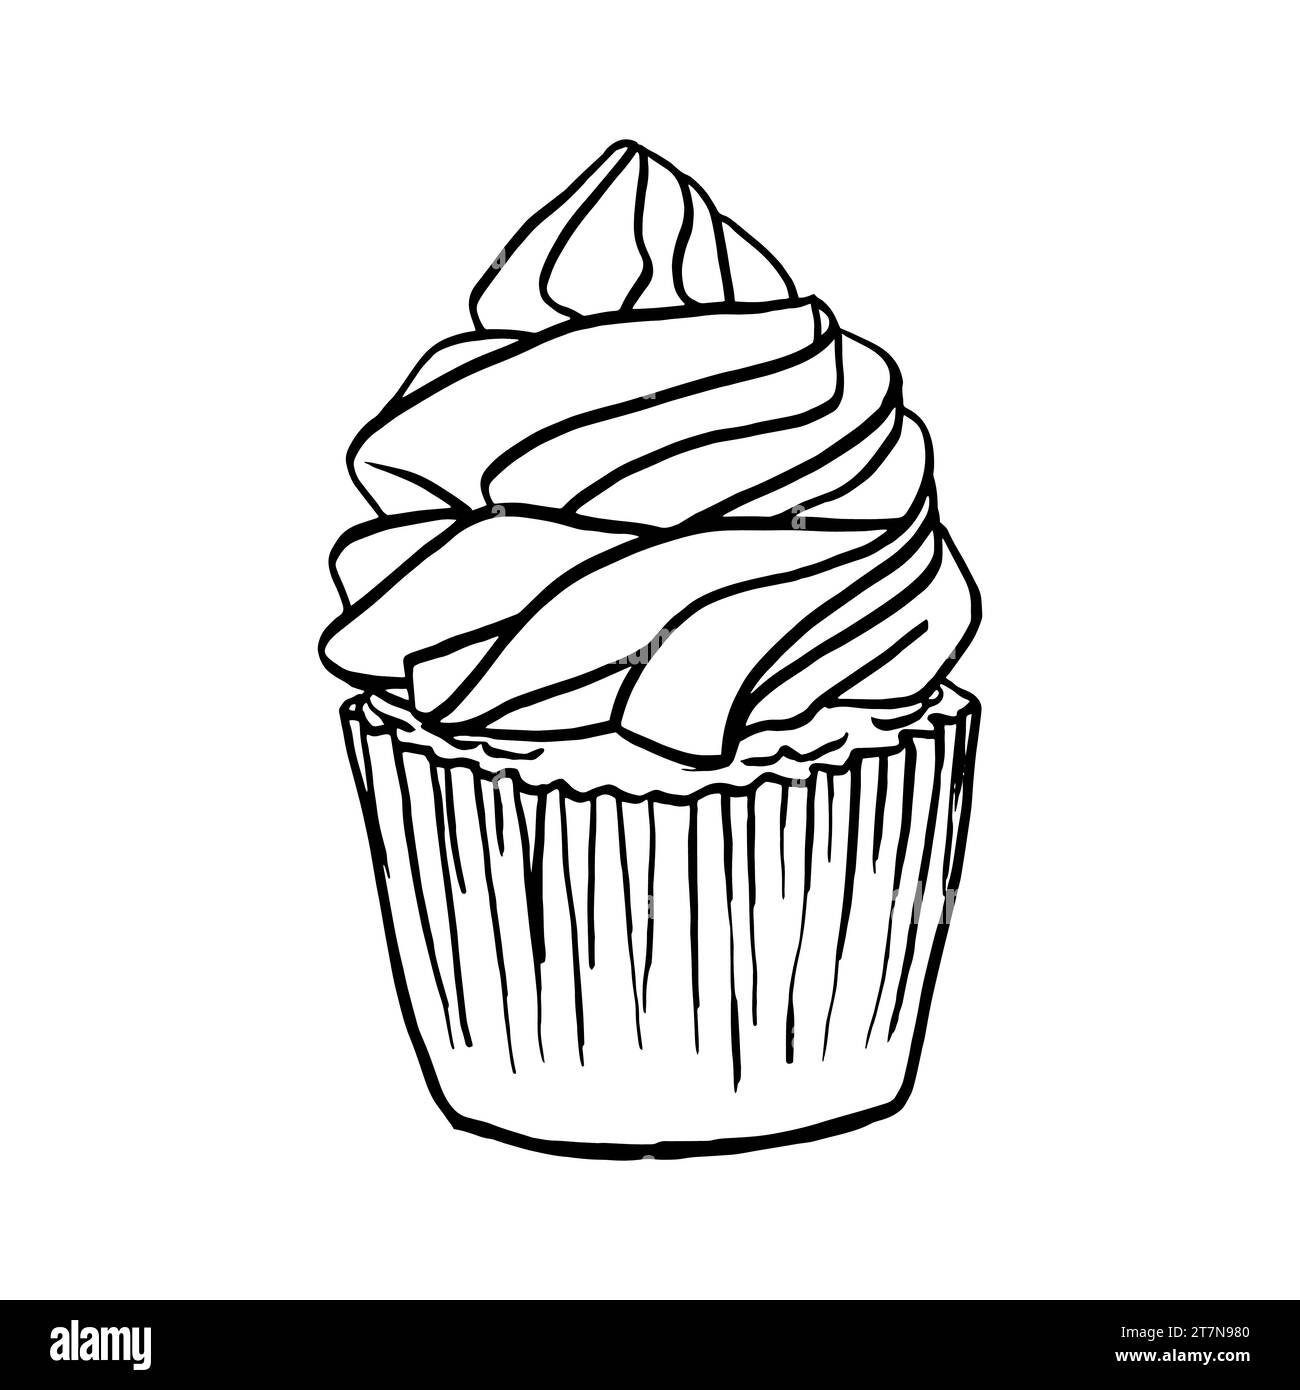 Linea di cupcake disegnata a mano disegnata in bianco e nero. Schizzo di muffin appena sfornato, illustrazione vettoriale di pasta incisa. Dolce dolce dolce dolce Illustrazione Vettoriale